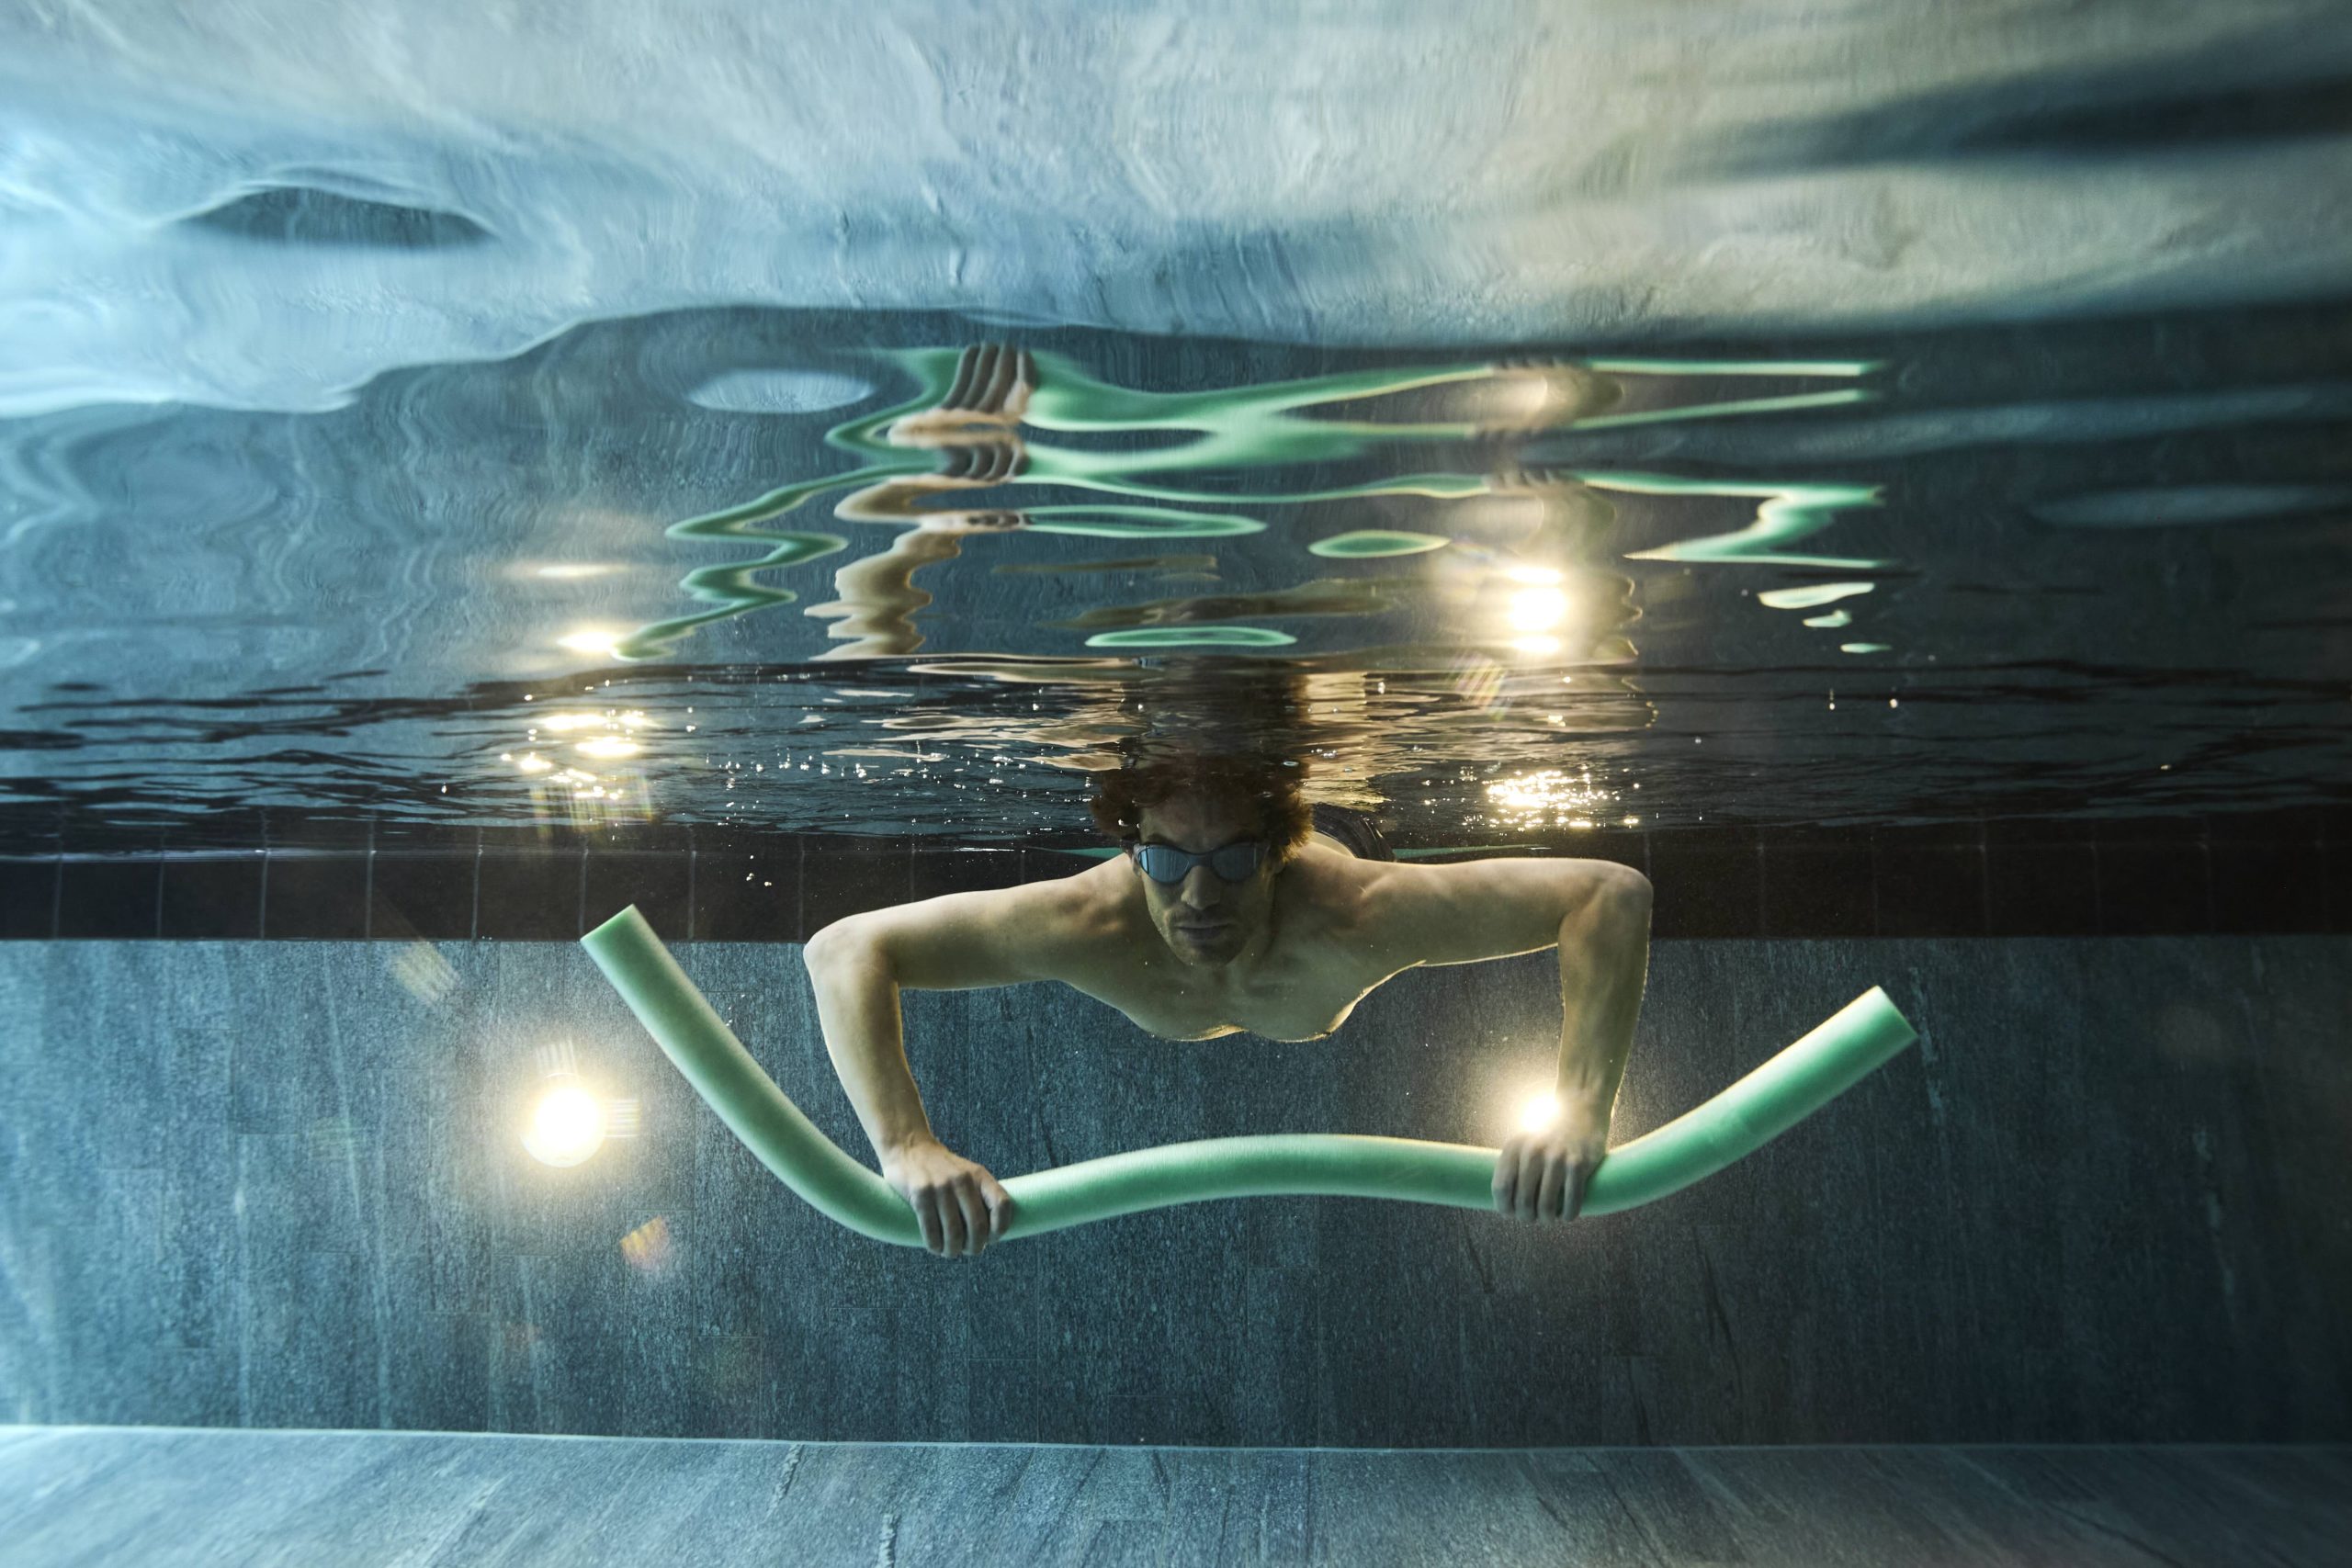 man swimming underwater